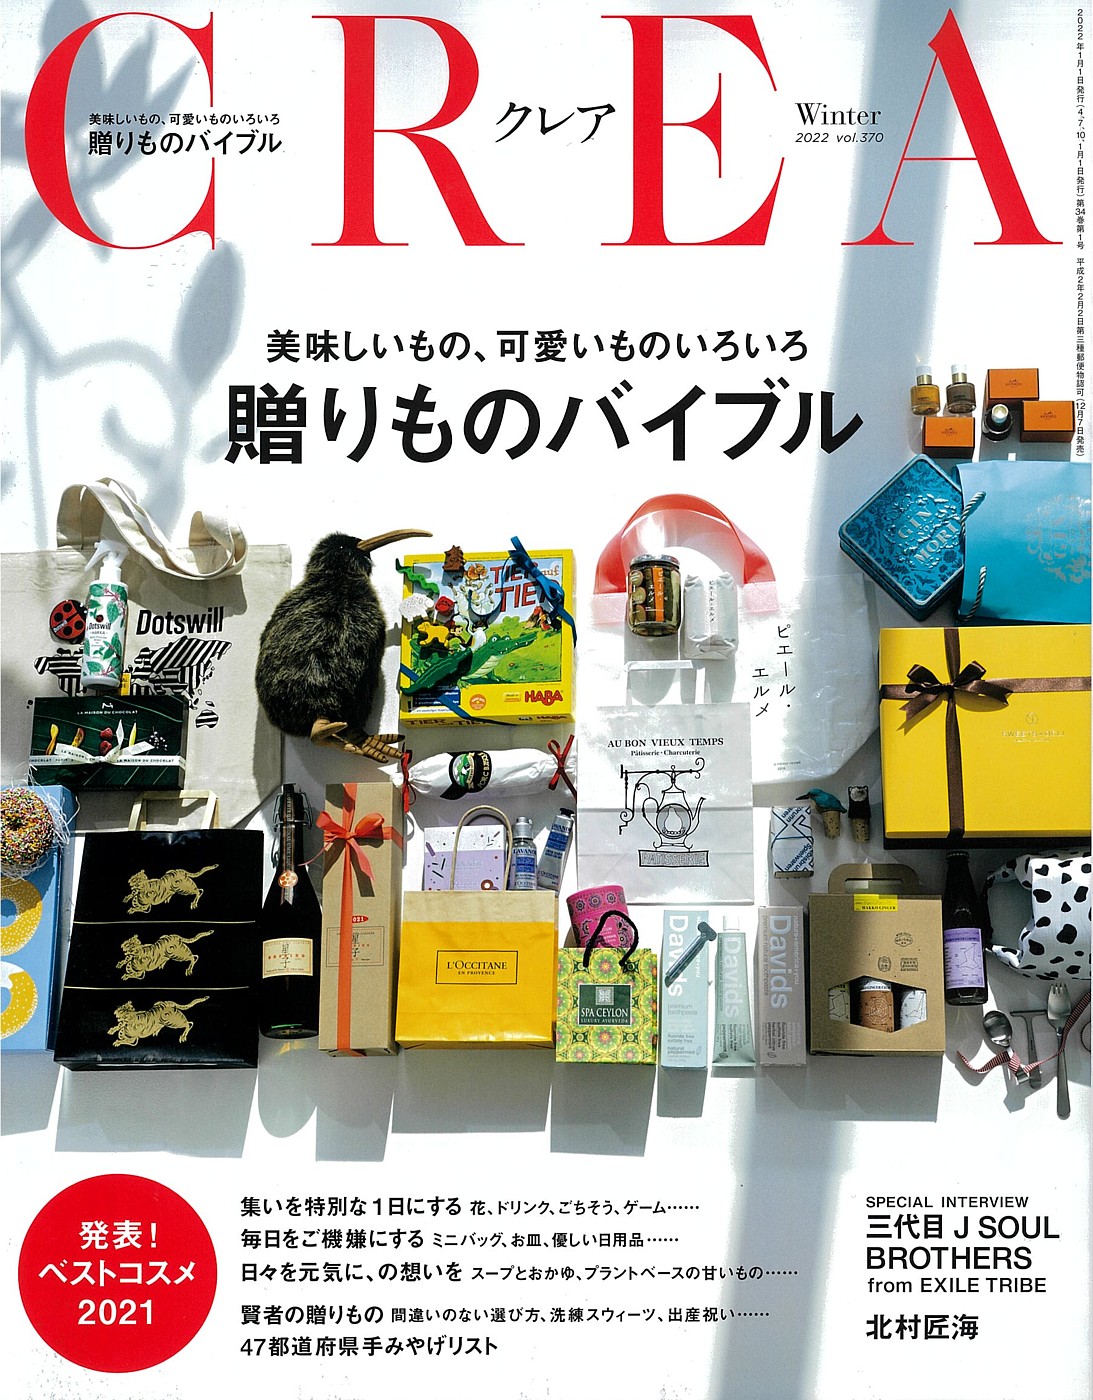 本日発売の雑誌「CREA/クレア」をご覧ください